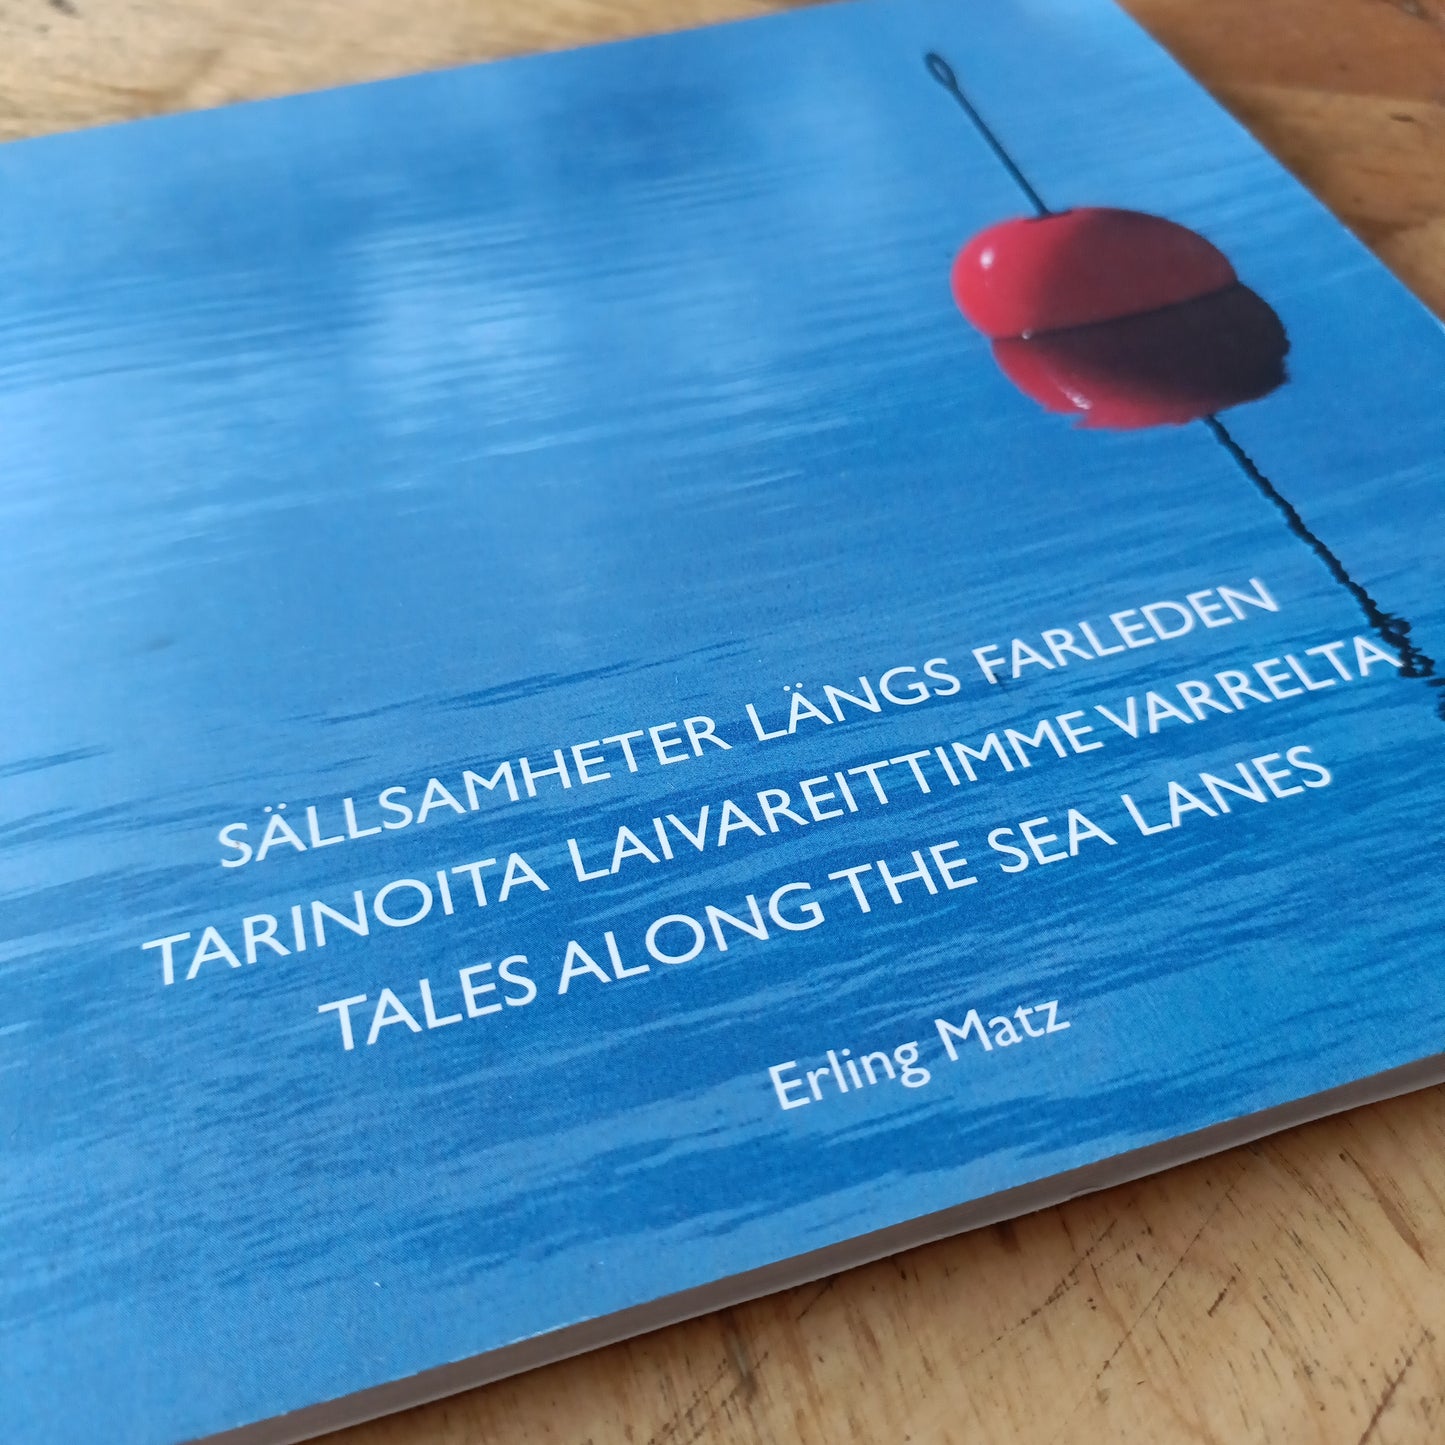 Sällsamheter längs farleden - Tarinoita laivareittimme varrelta - Tales Along the Sea Lanes